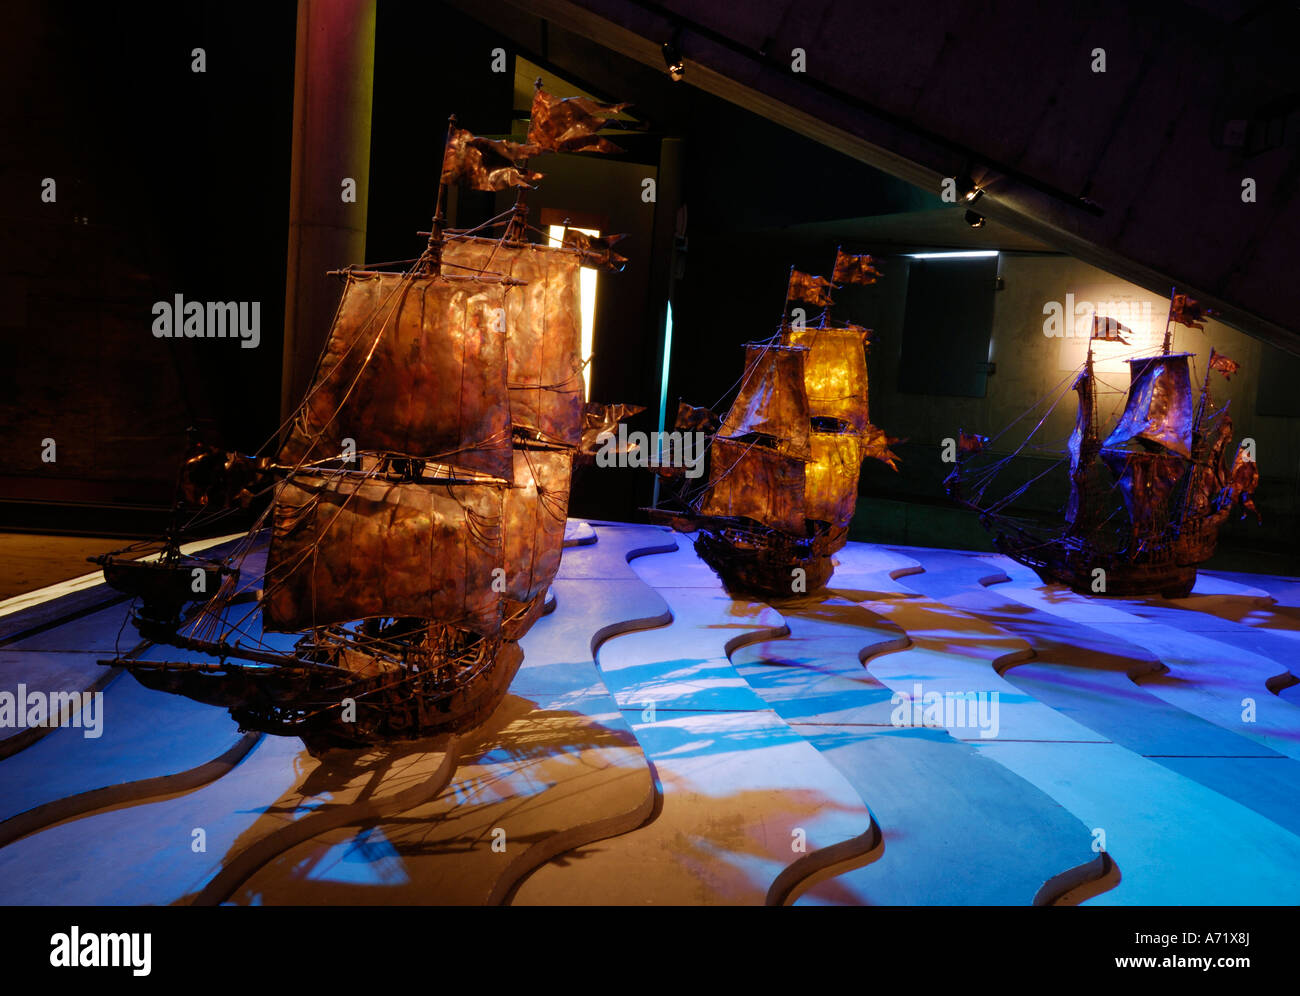 Expositions au musée Vasa à Stockholm en Suède montrent à la fois le navire réel et les modèles du 17e siècle battleship Vasa Banque D'Images